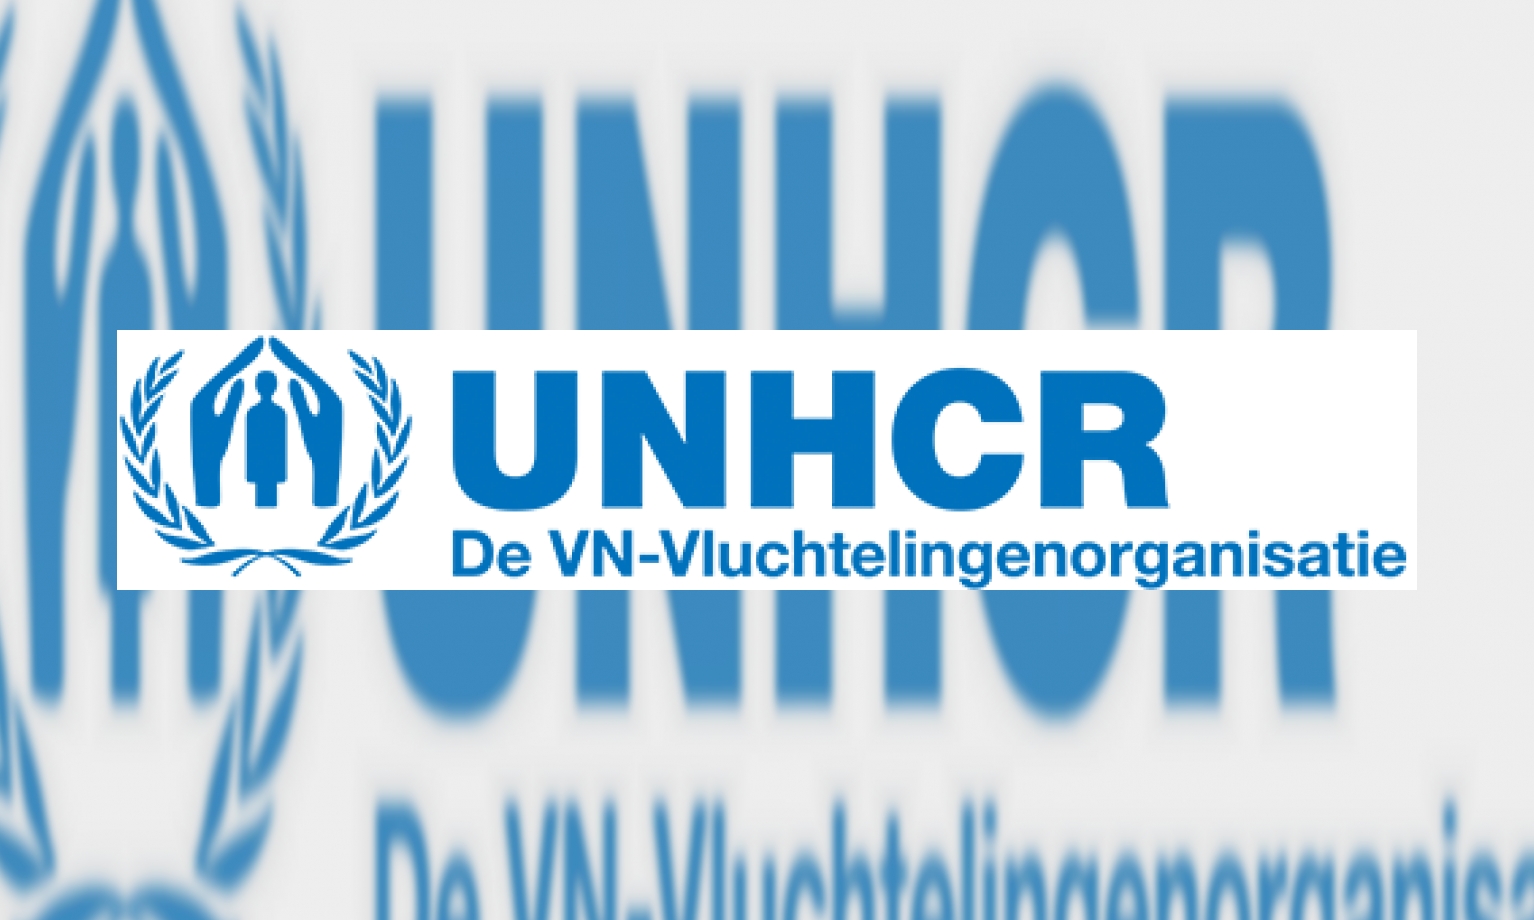 De VN-Vluchtelingenorganisatie